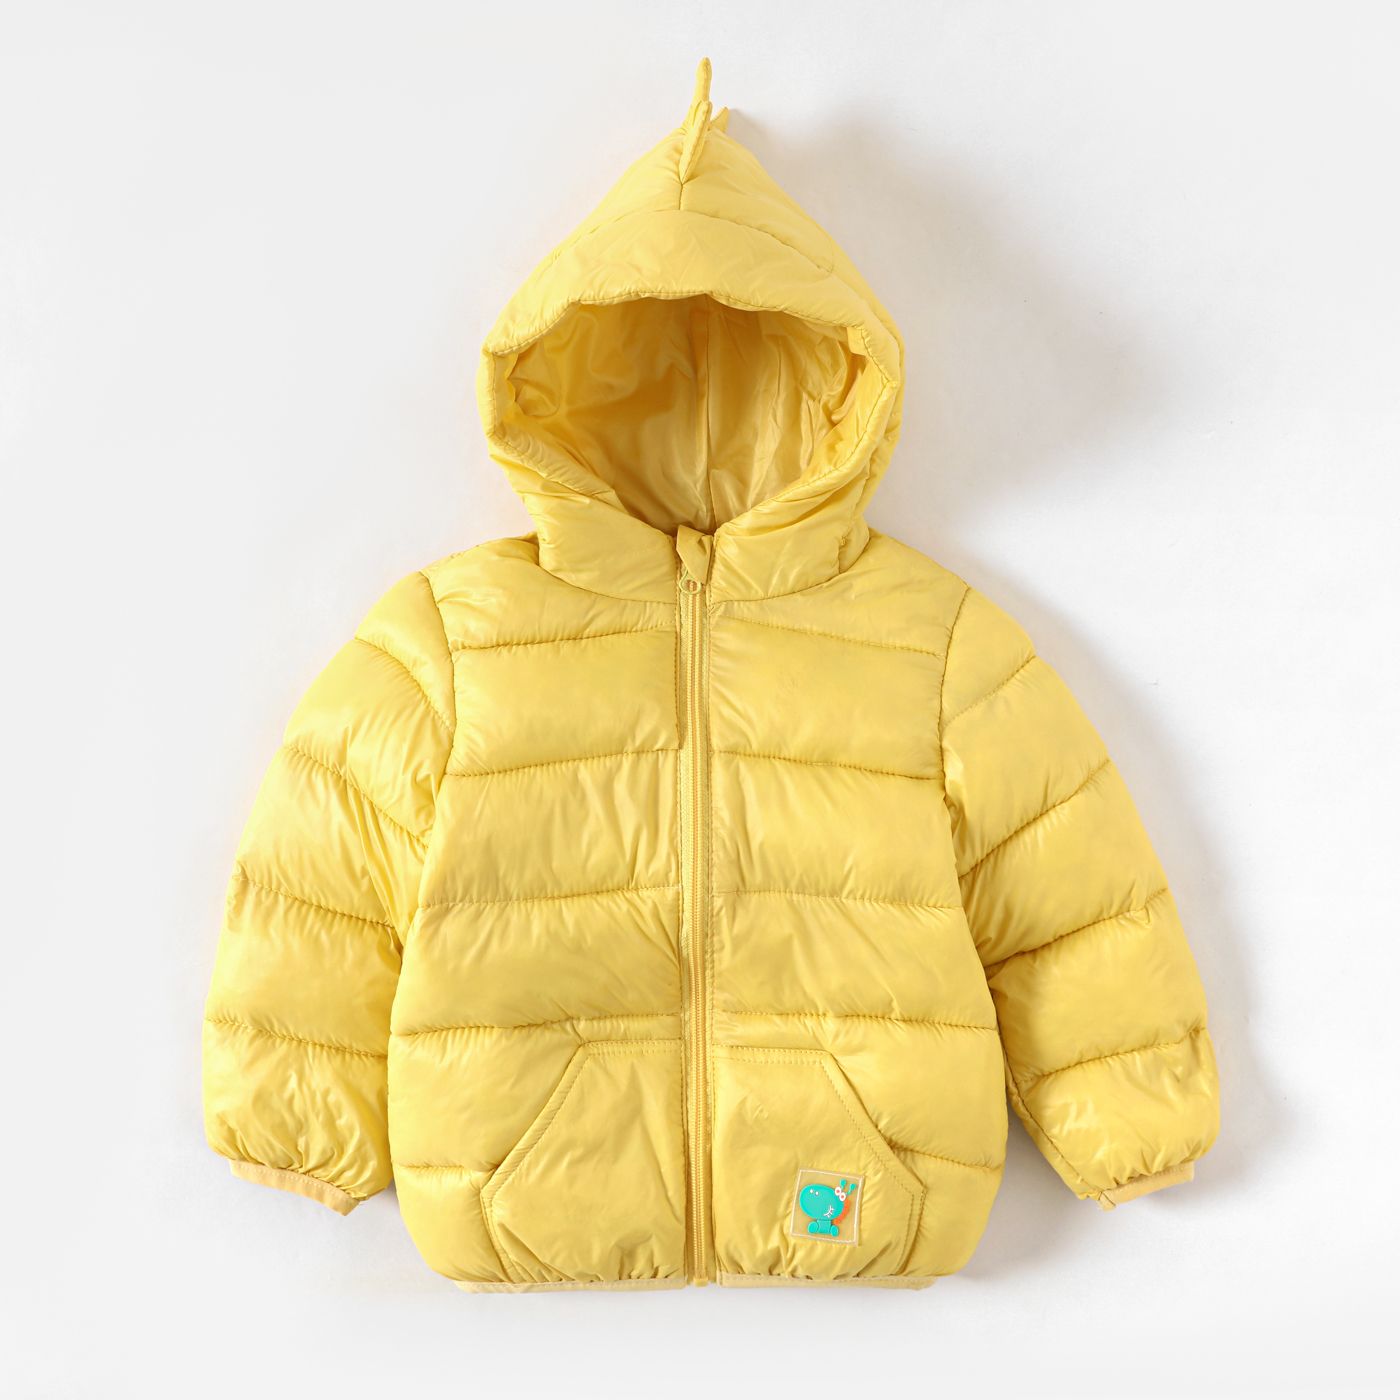 Toddler Boy/Girl Childlike Dinosaur Shape 3D Design Winter Coat